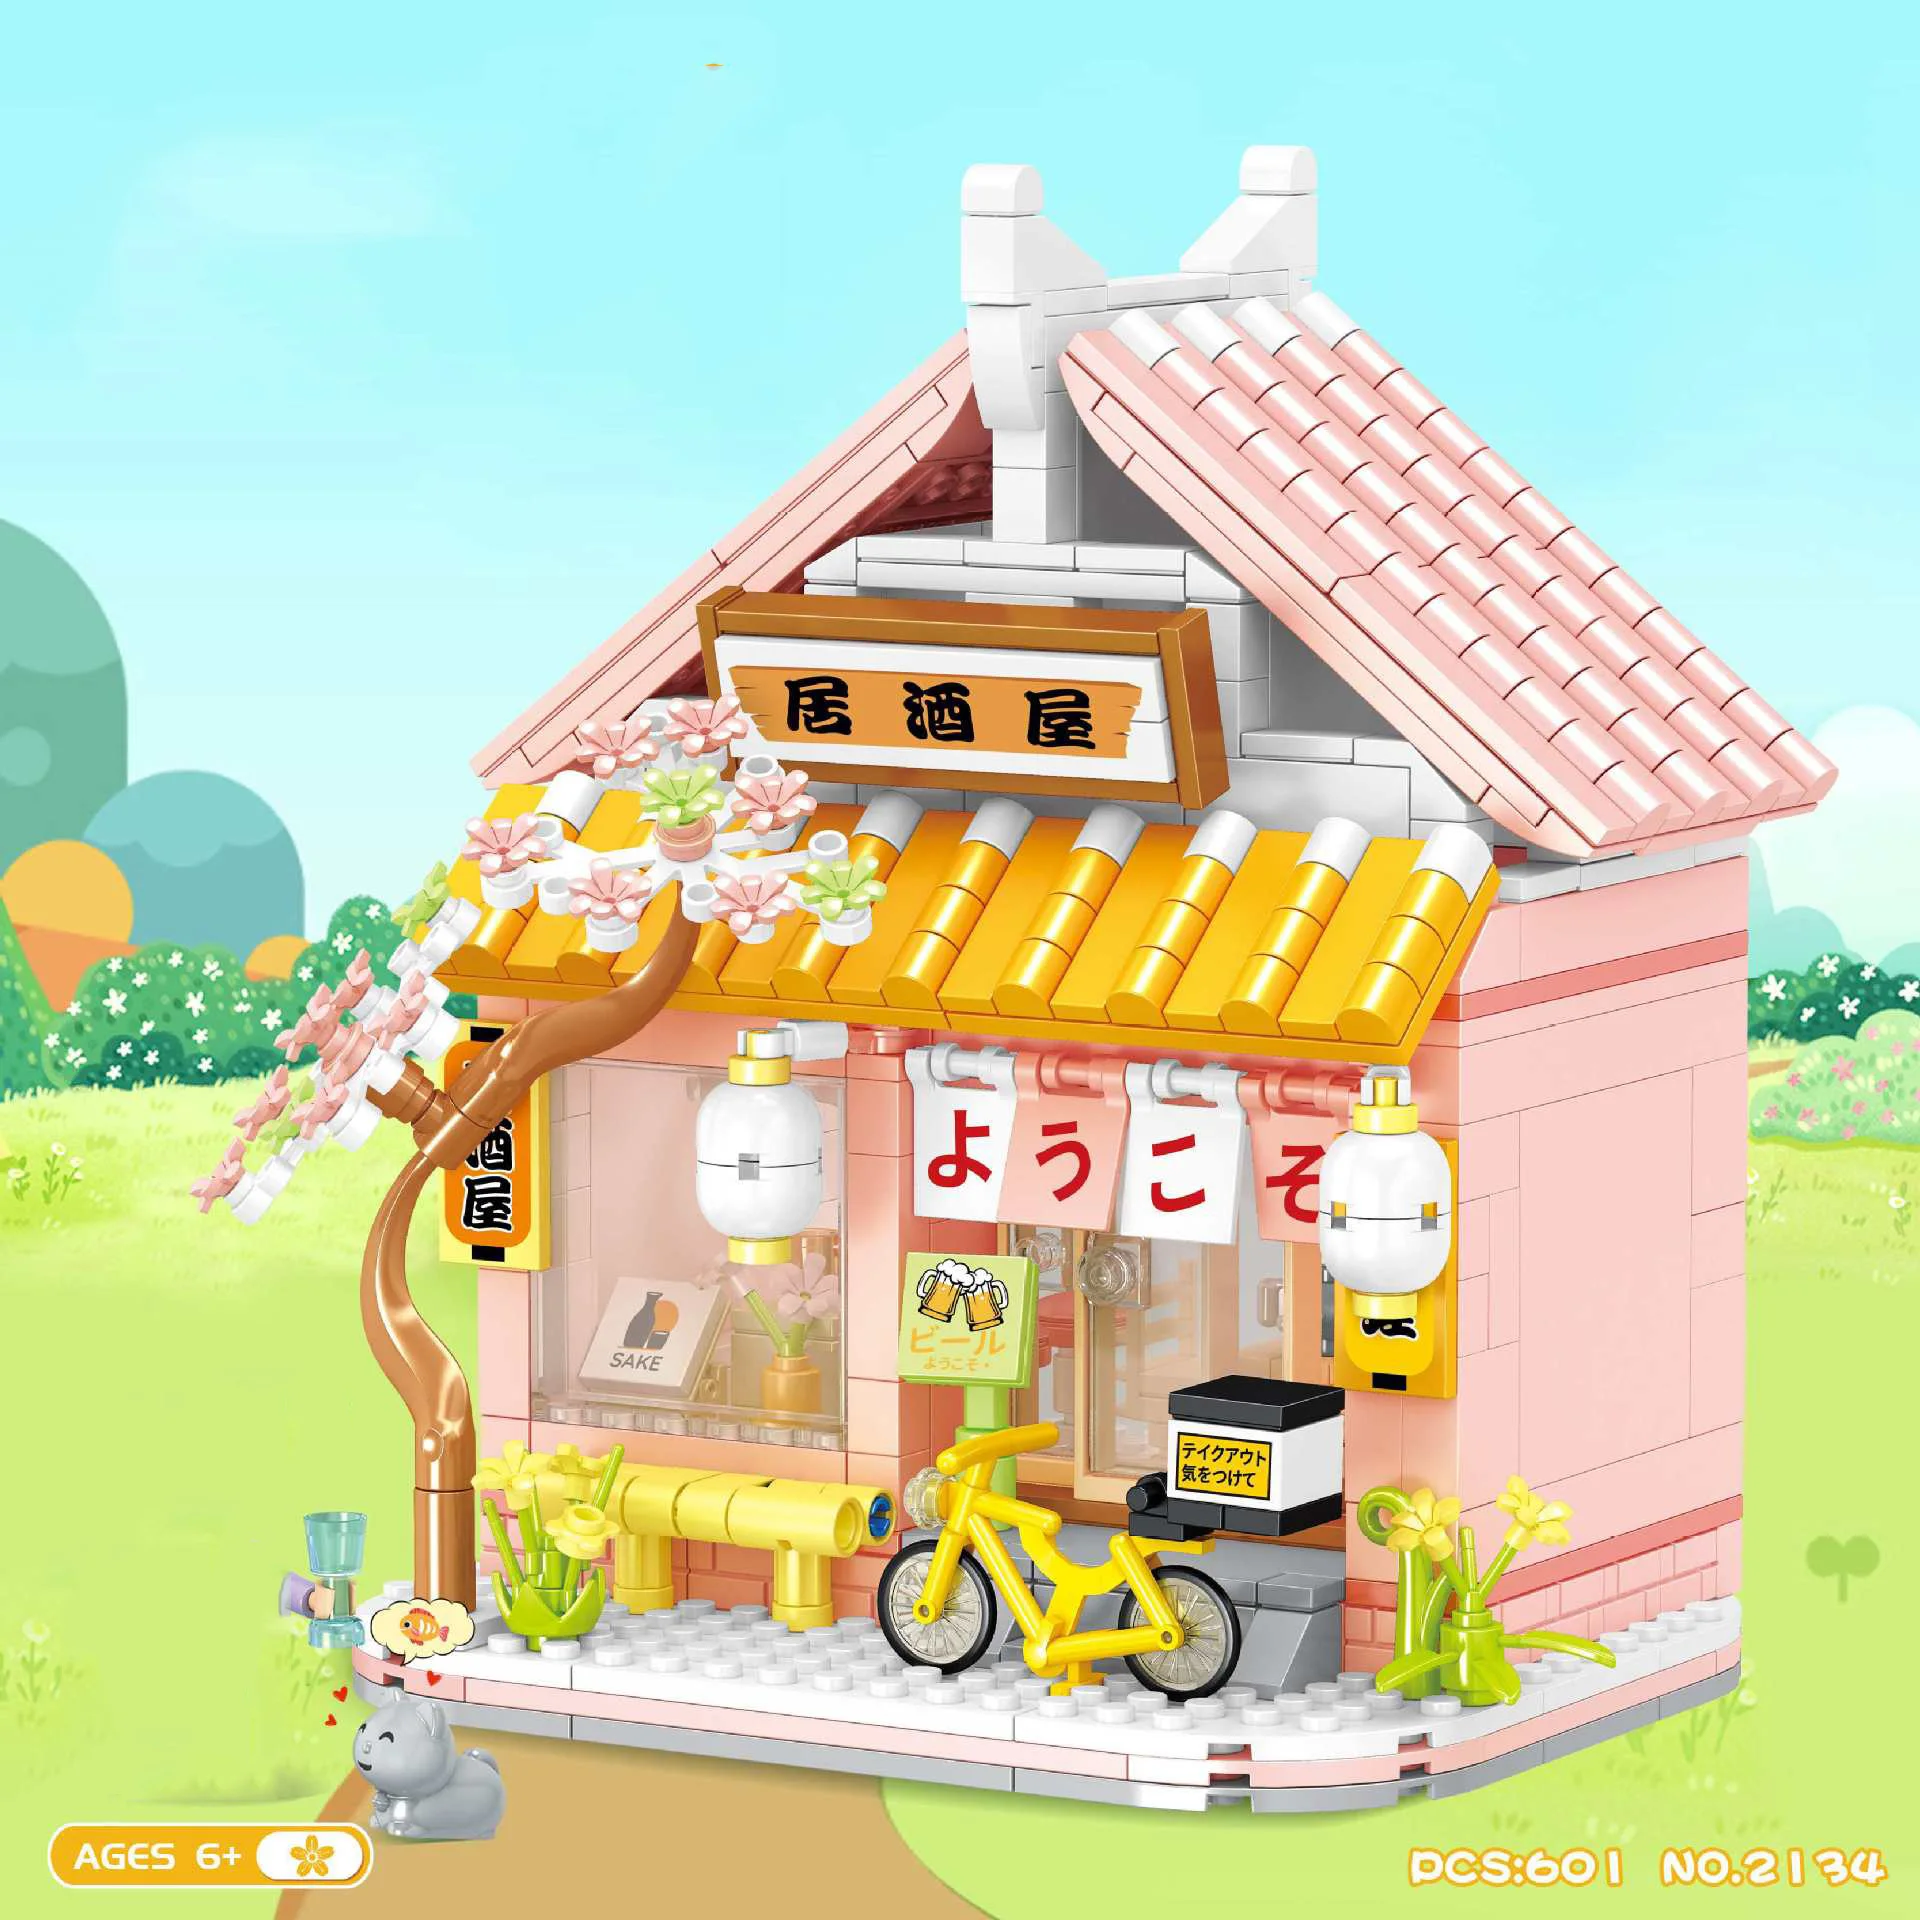 

Loz мини-конструктор Алмазный японский город улица вид японский ресторан кирпичи фигурки Izakaya обучающие игрушки для детей подарок